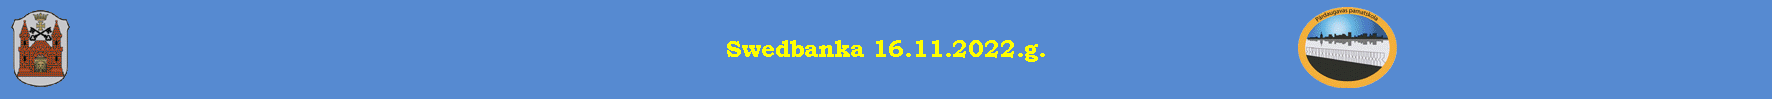 Swedbanka 16.11.2022.g.